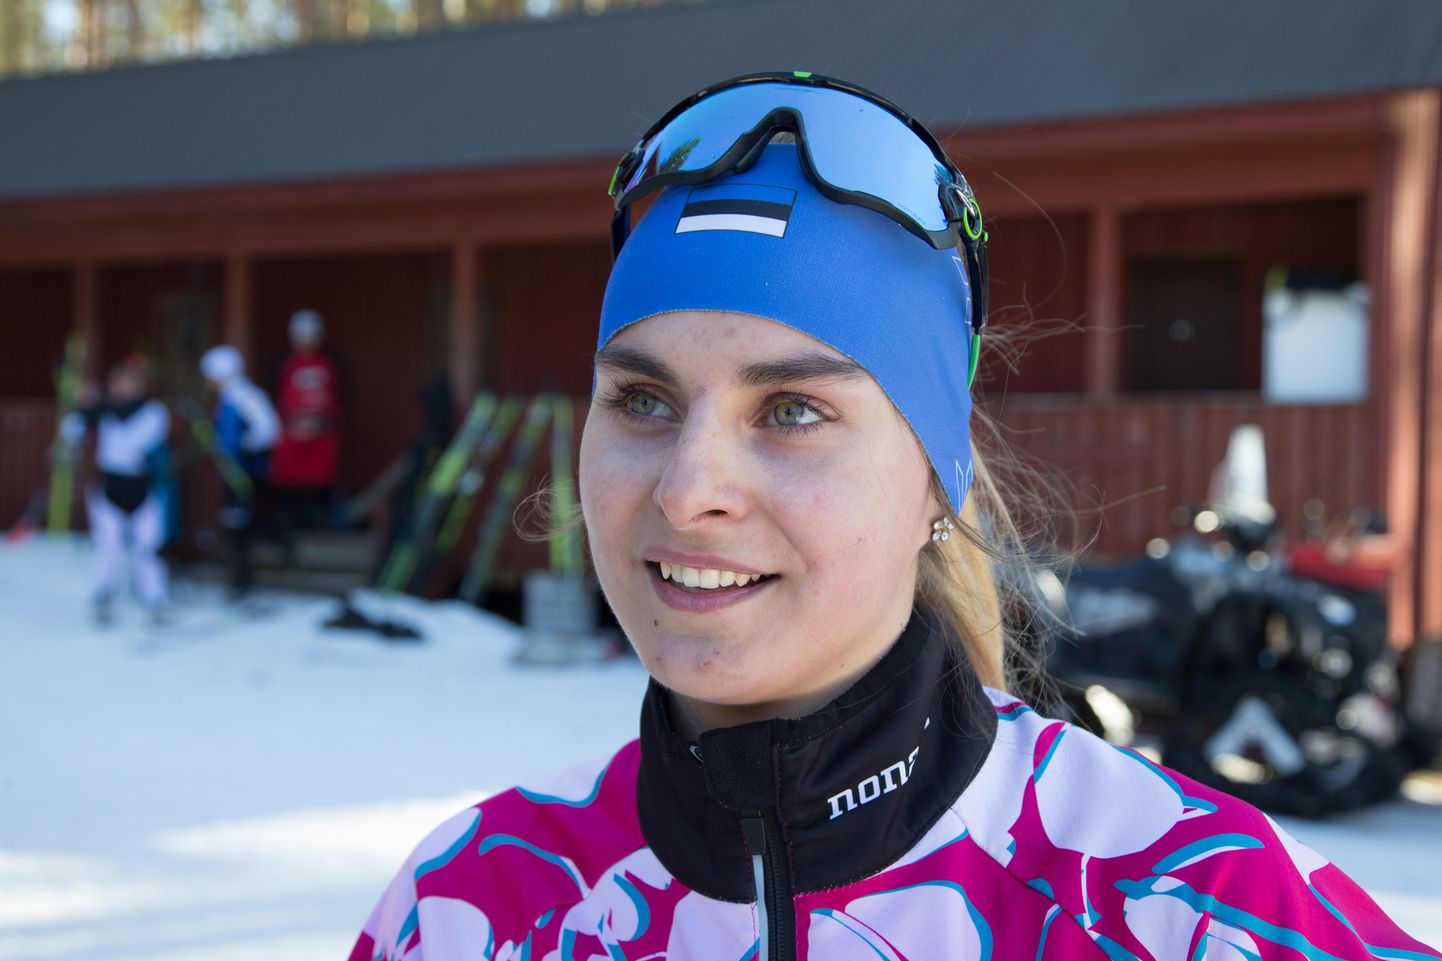 Уроженка окрестностей Иллука Авели Уусталу хорошо выступила на первом соревновании сезона в Олосе, став на этом соревновании лучшей среди эстонских лыжниц.